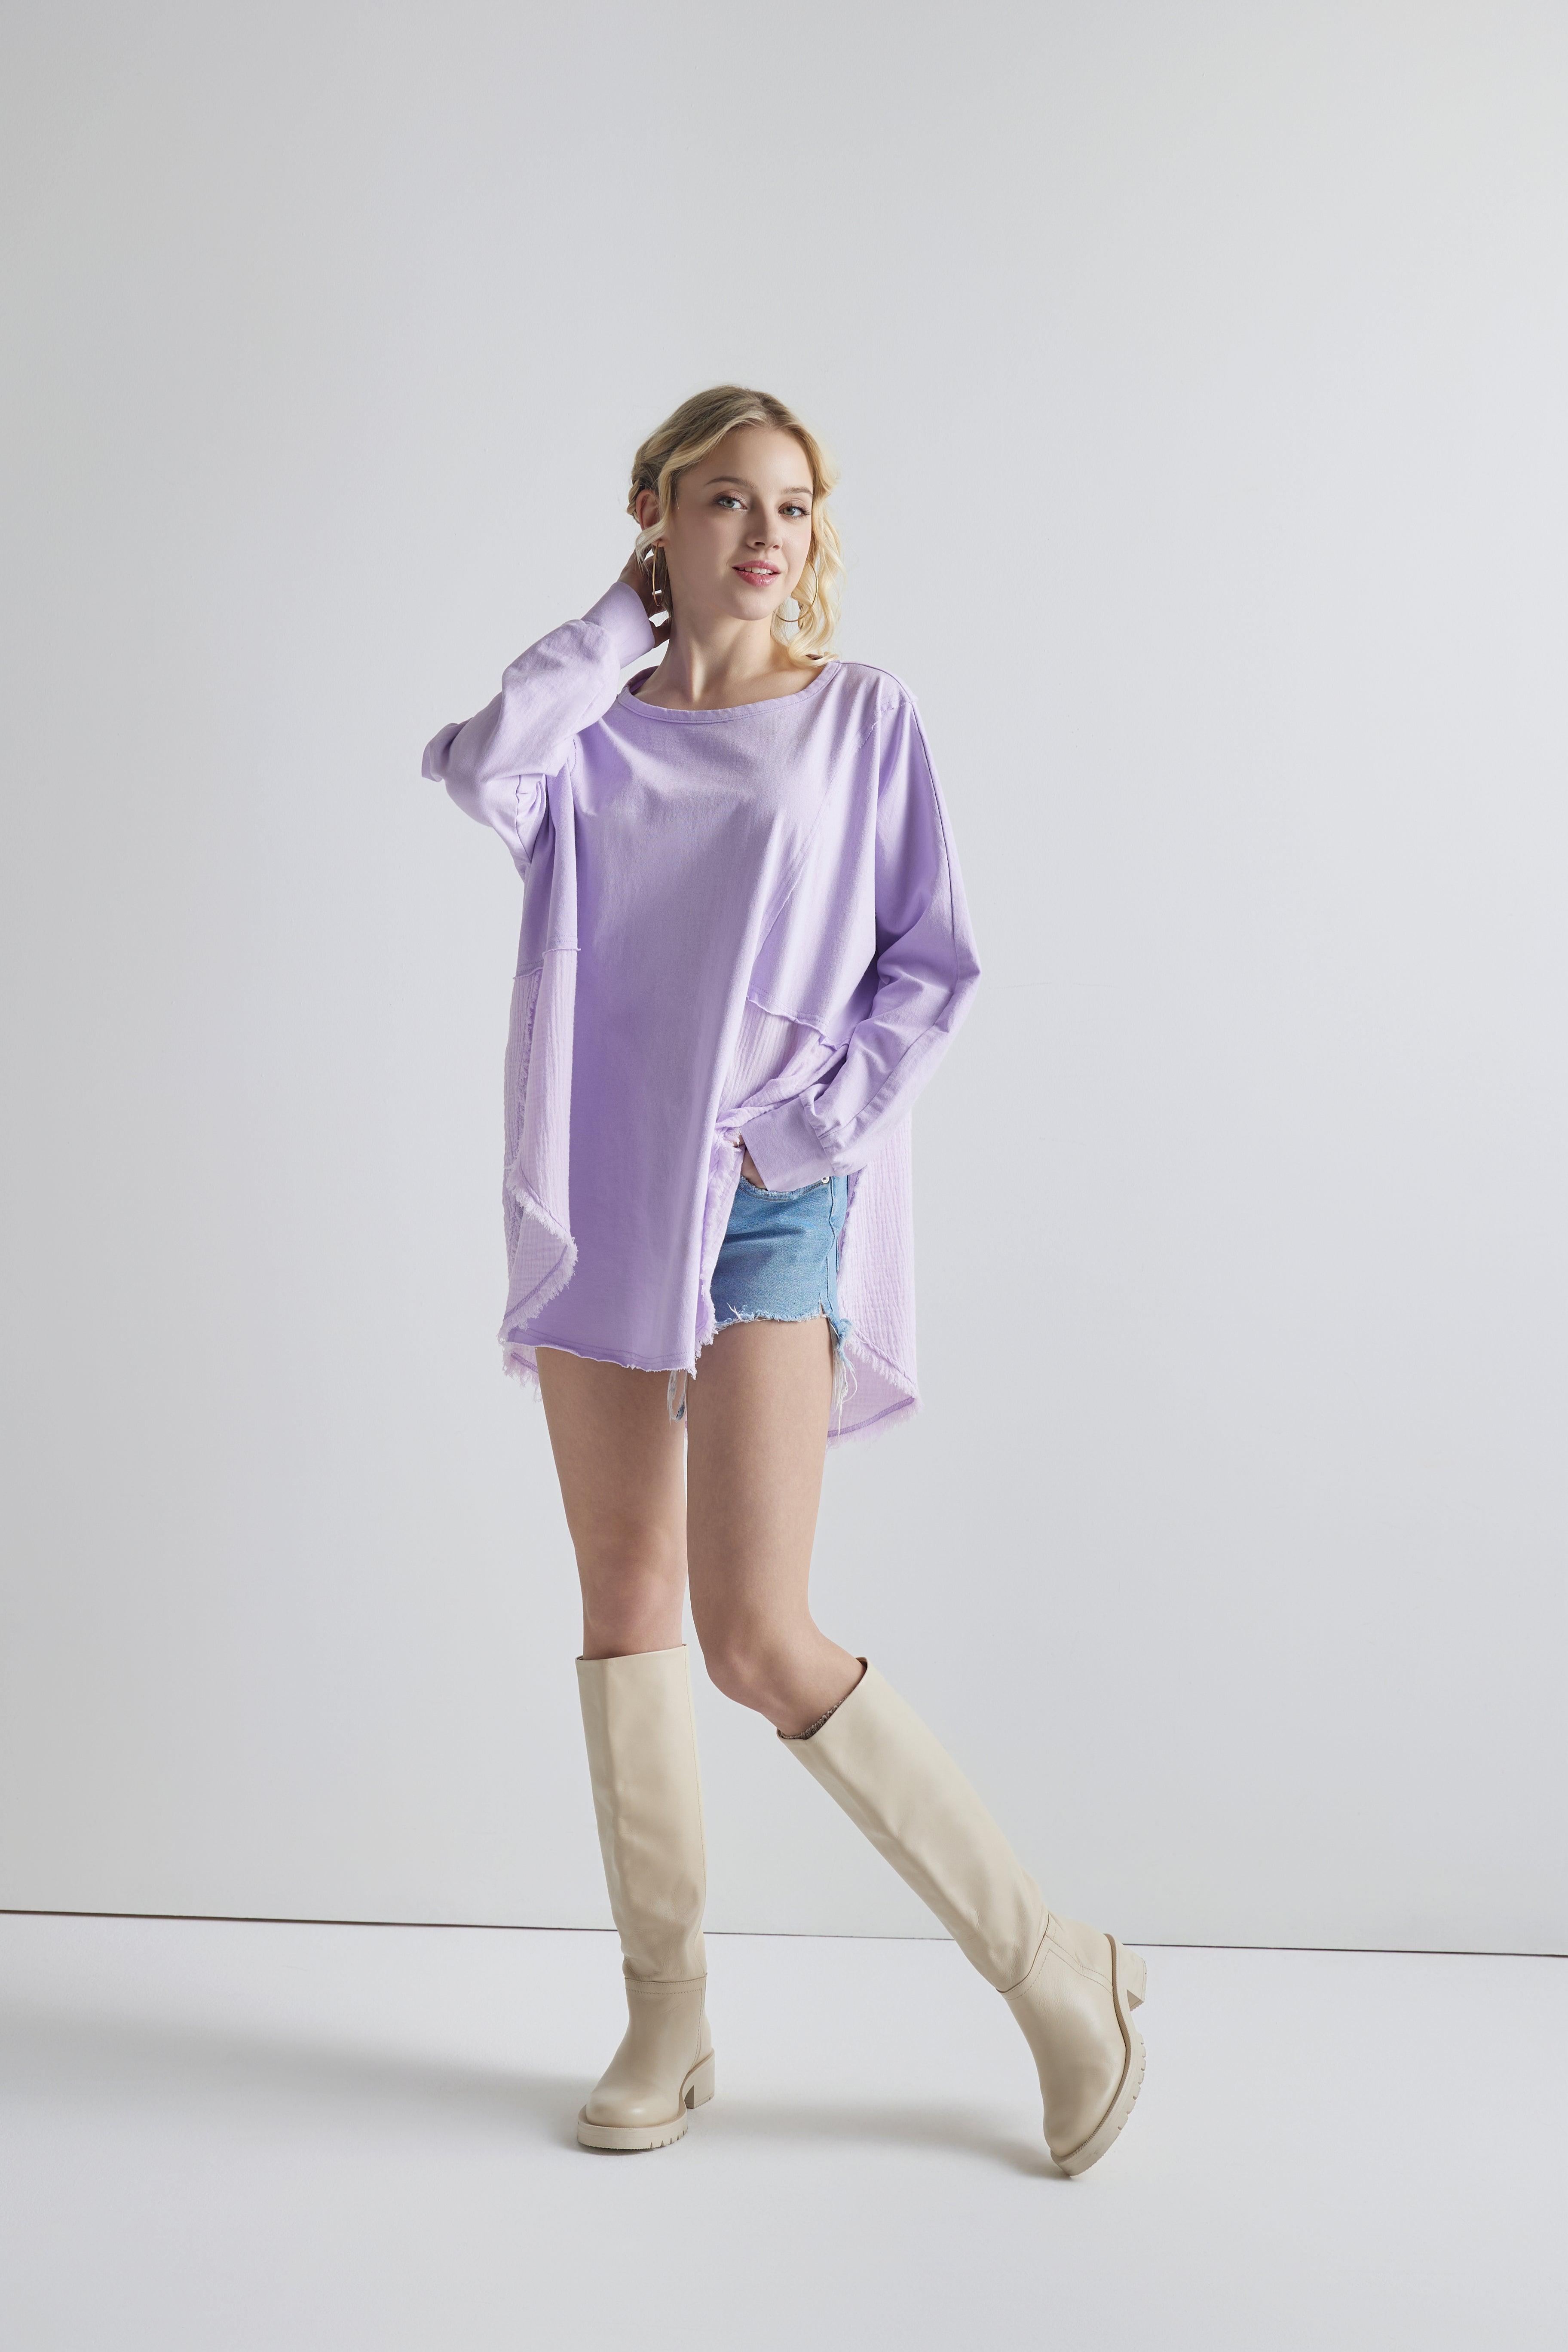 100% Cotton Comfy Oversized Round Side Slit Contrast Top - Lavender - noflik